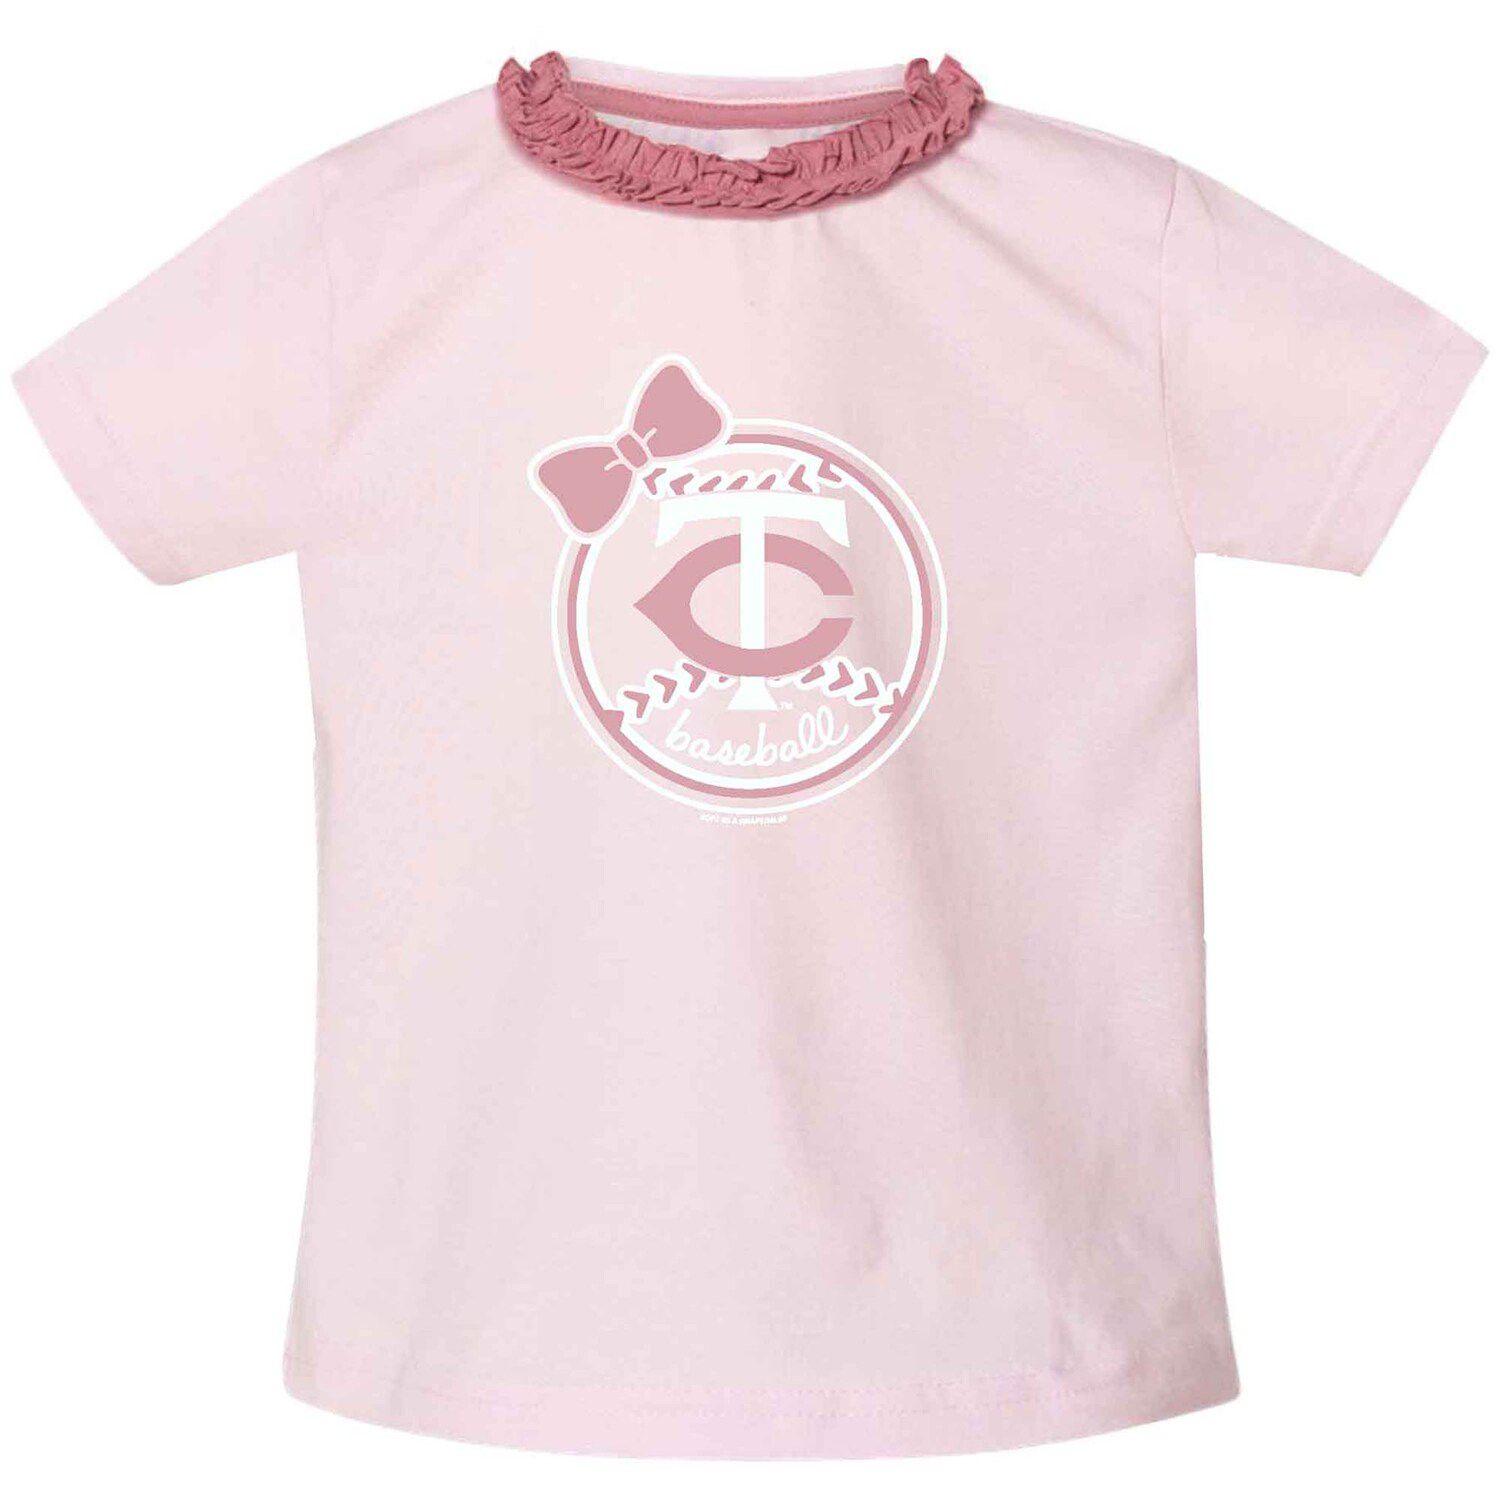 pink minnesota twins apparel